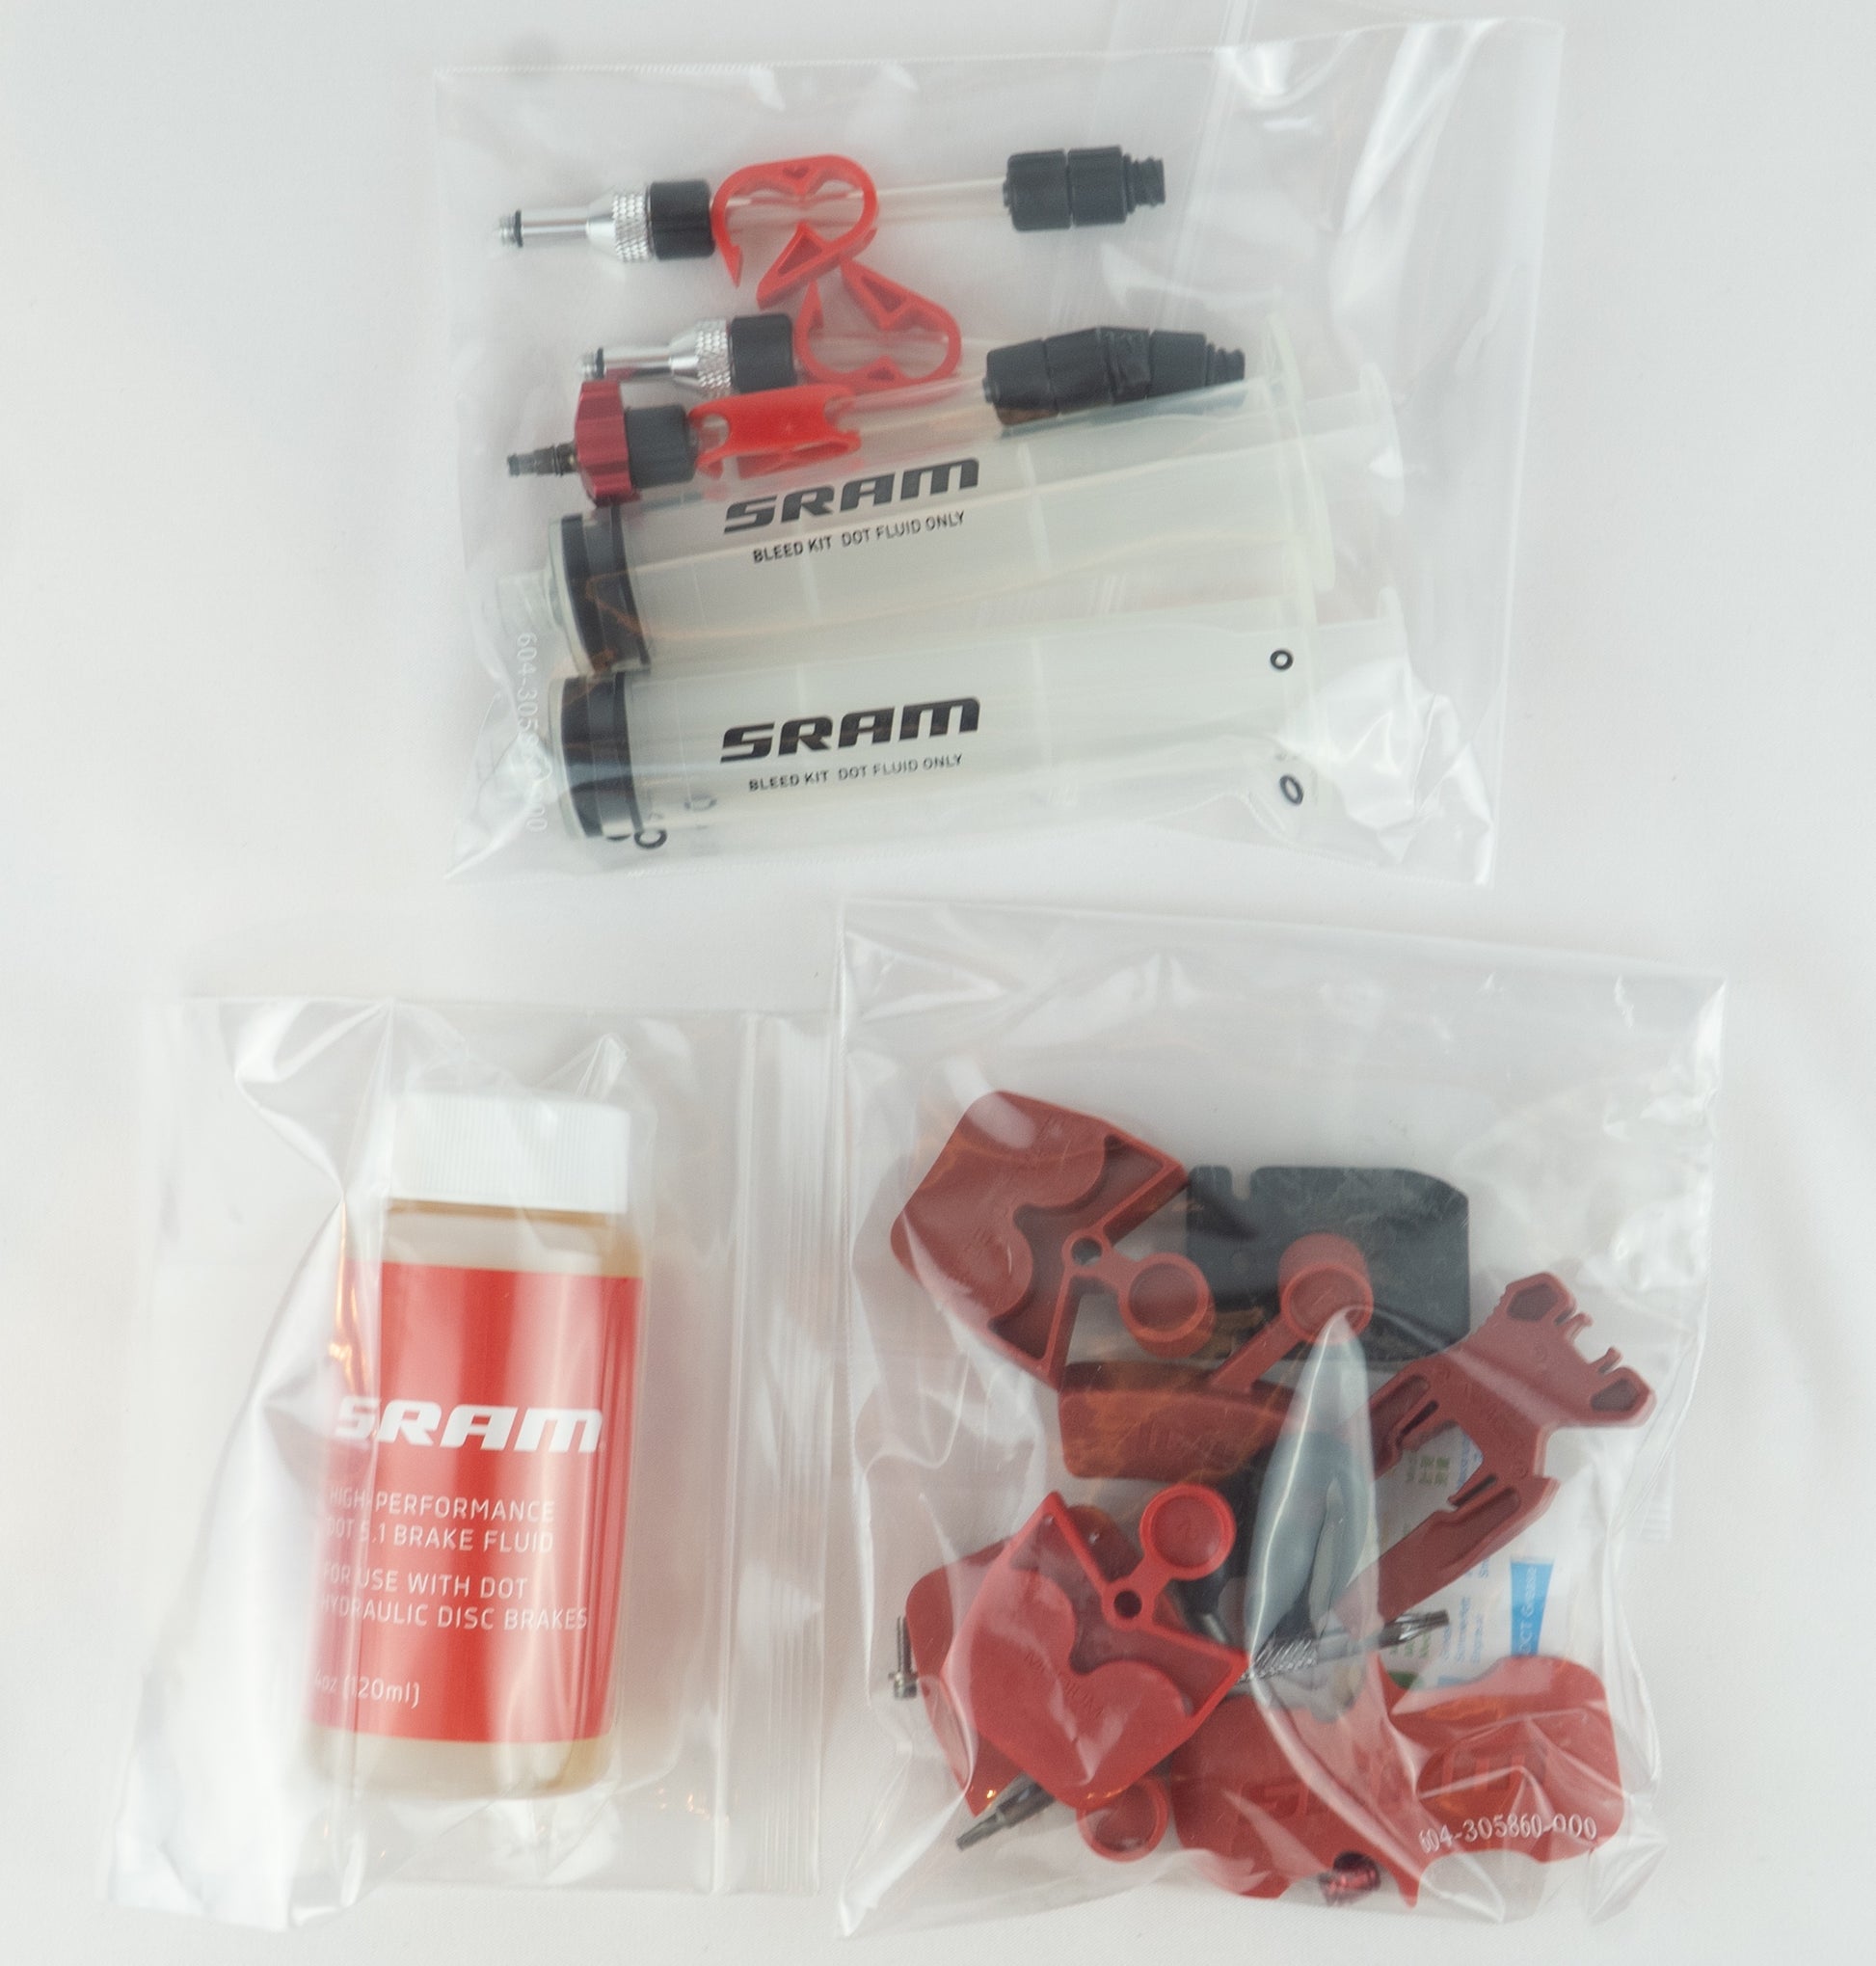 SRAM Standard Entlüftungskit/Bleed Kit mit DOT 5.1 Bremsflüssigkeit - bikeparadise